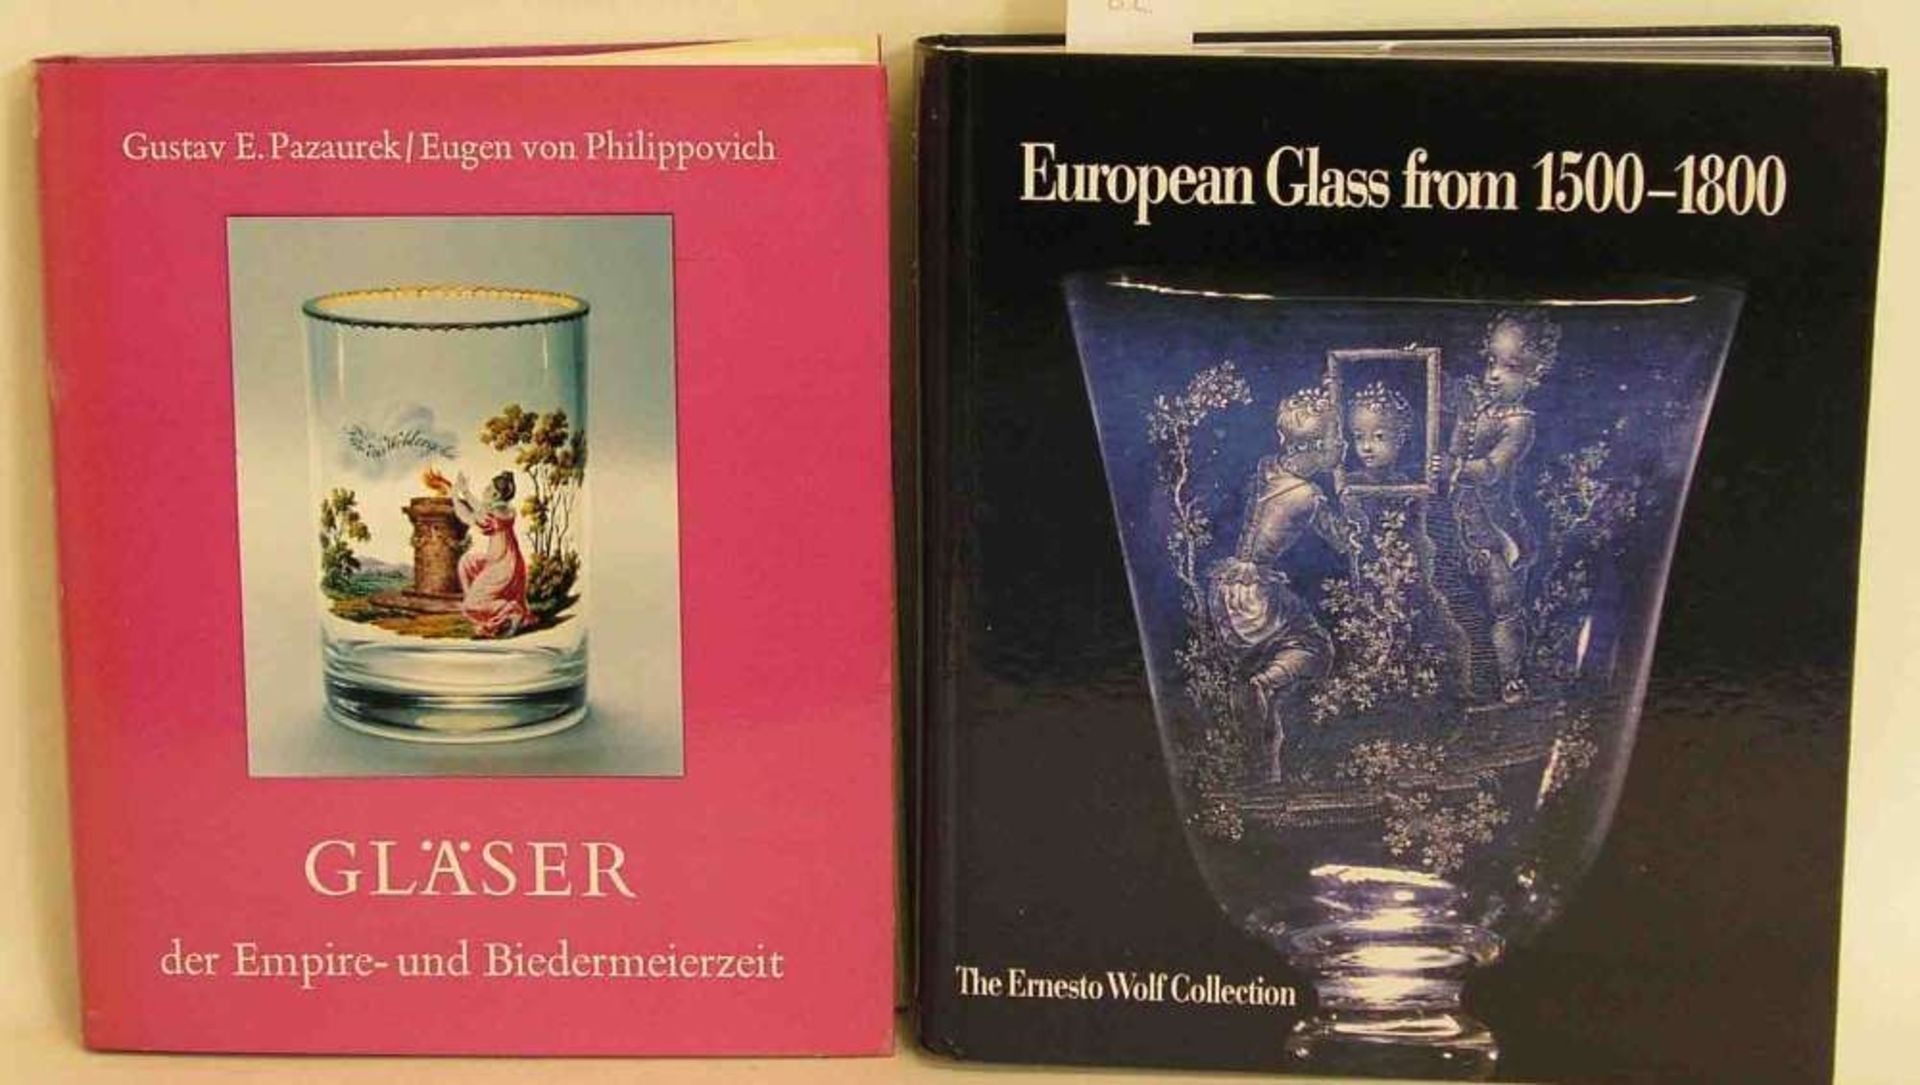 Kunst und Geschichte, zwei Bücher. Dabei Klesse, Brigitte (u.a.): "European Glass from 1500 -